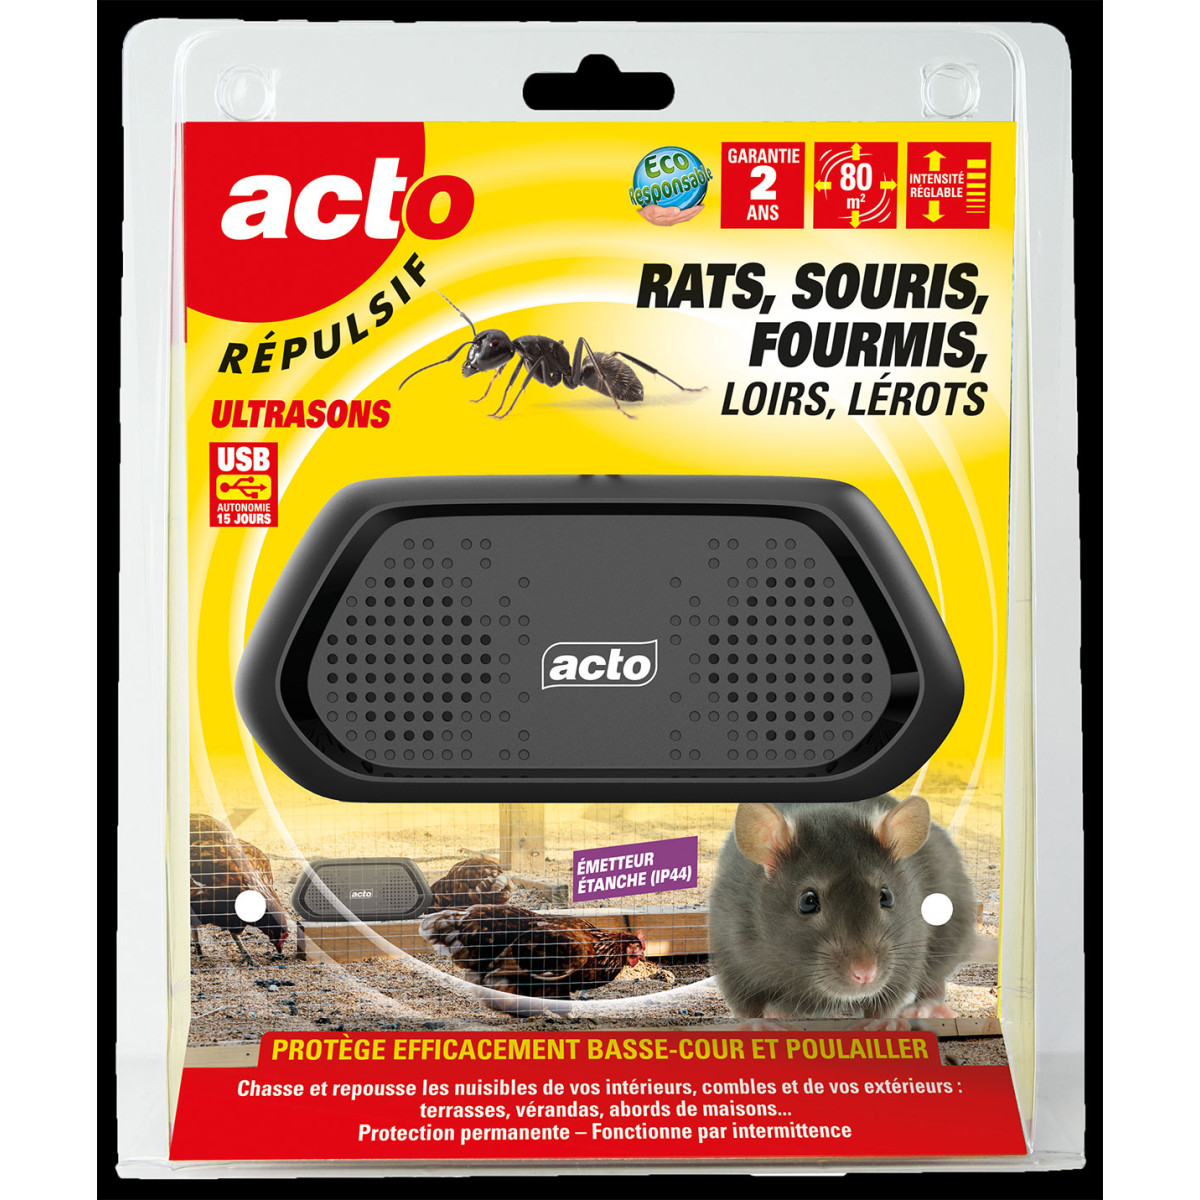 Acto répulsif ultrasons : solution ultime contre rats, souris, fourmis et plus.